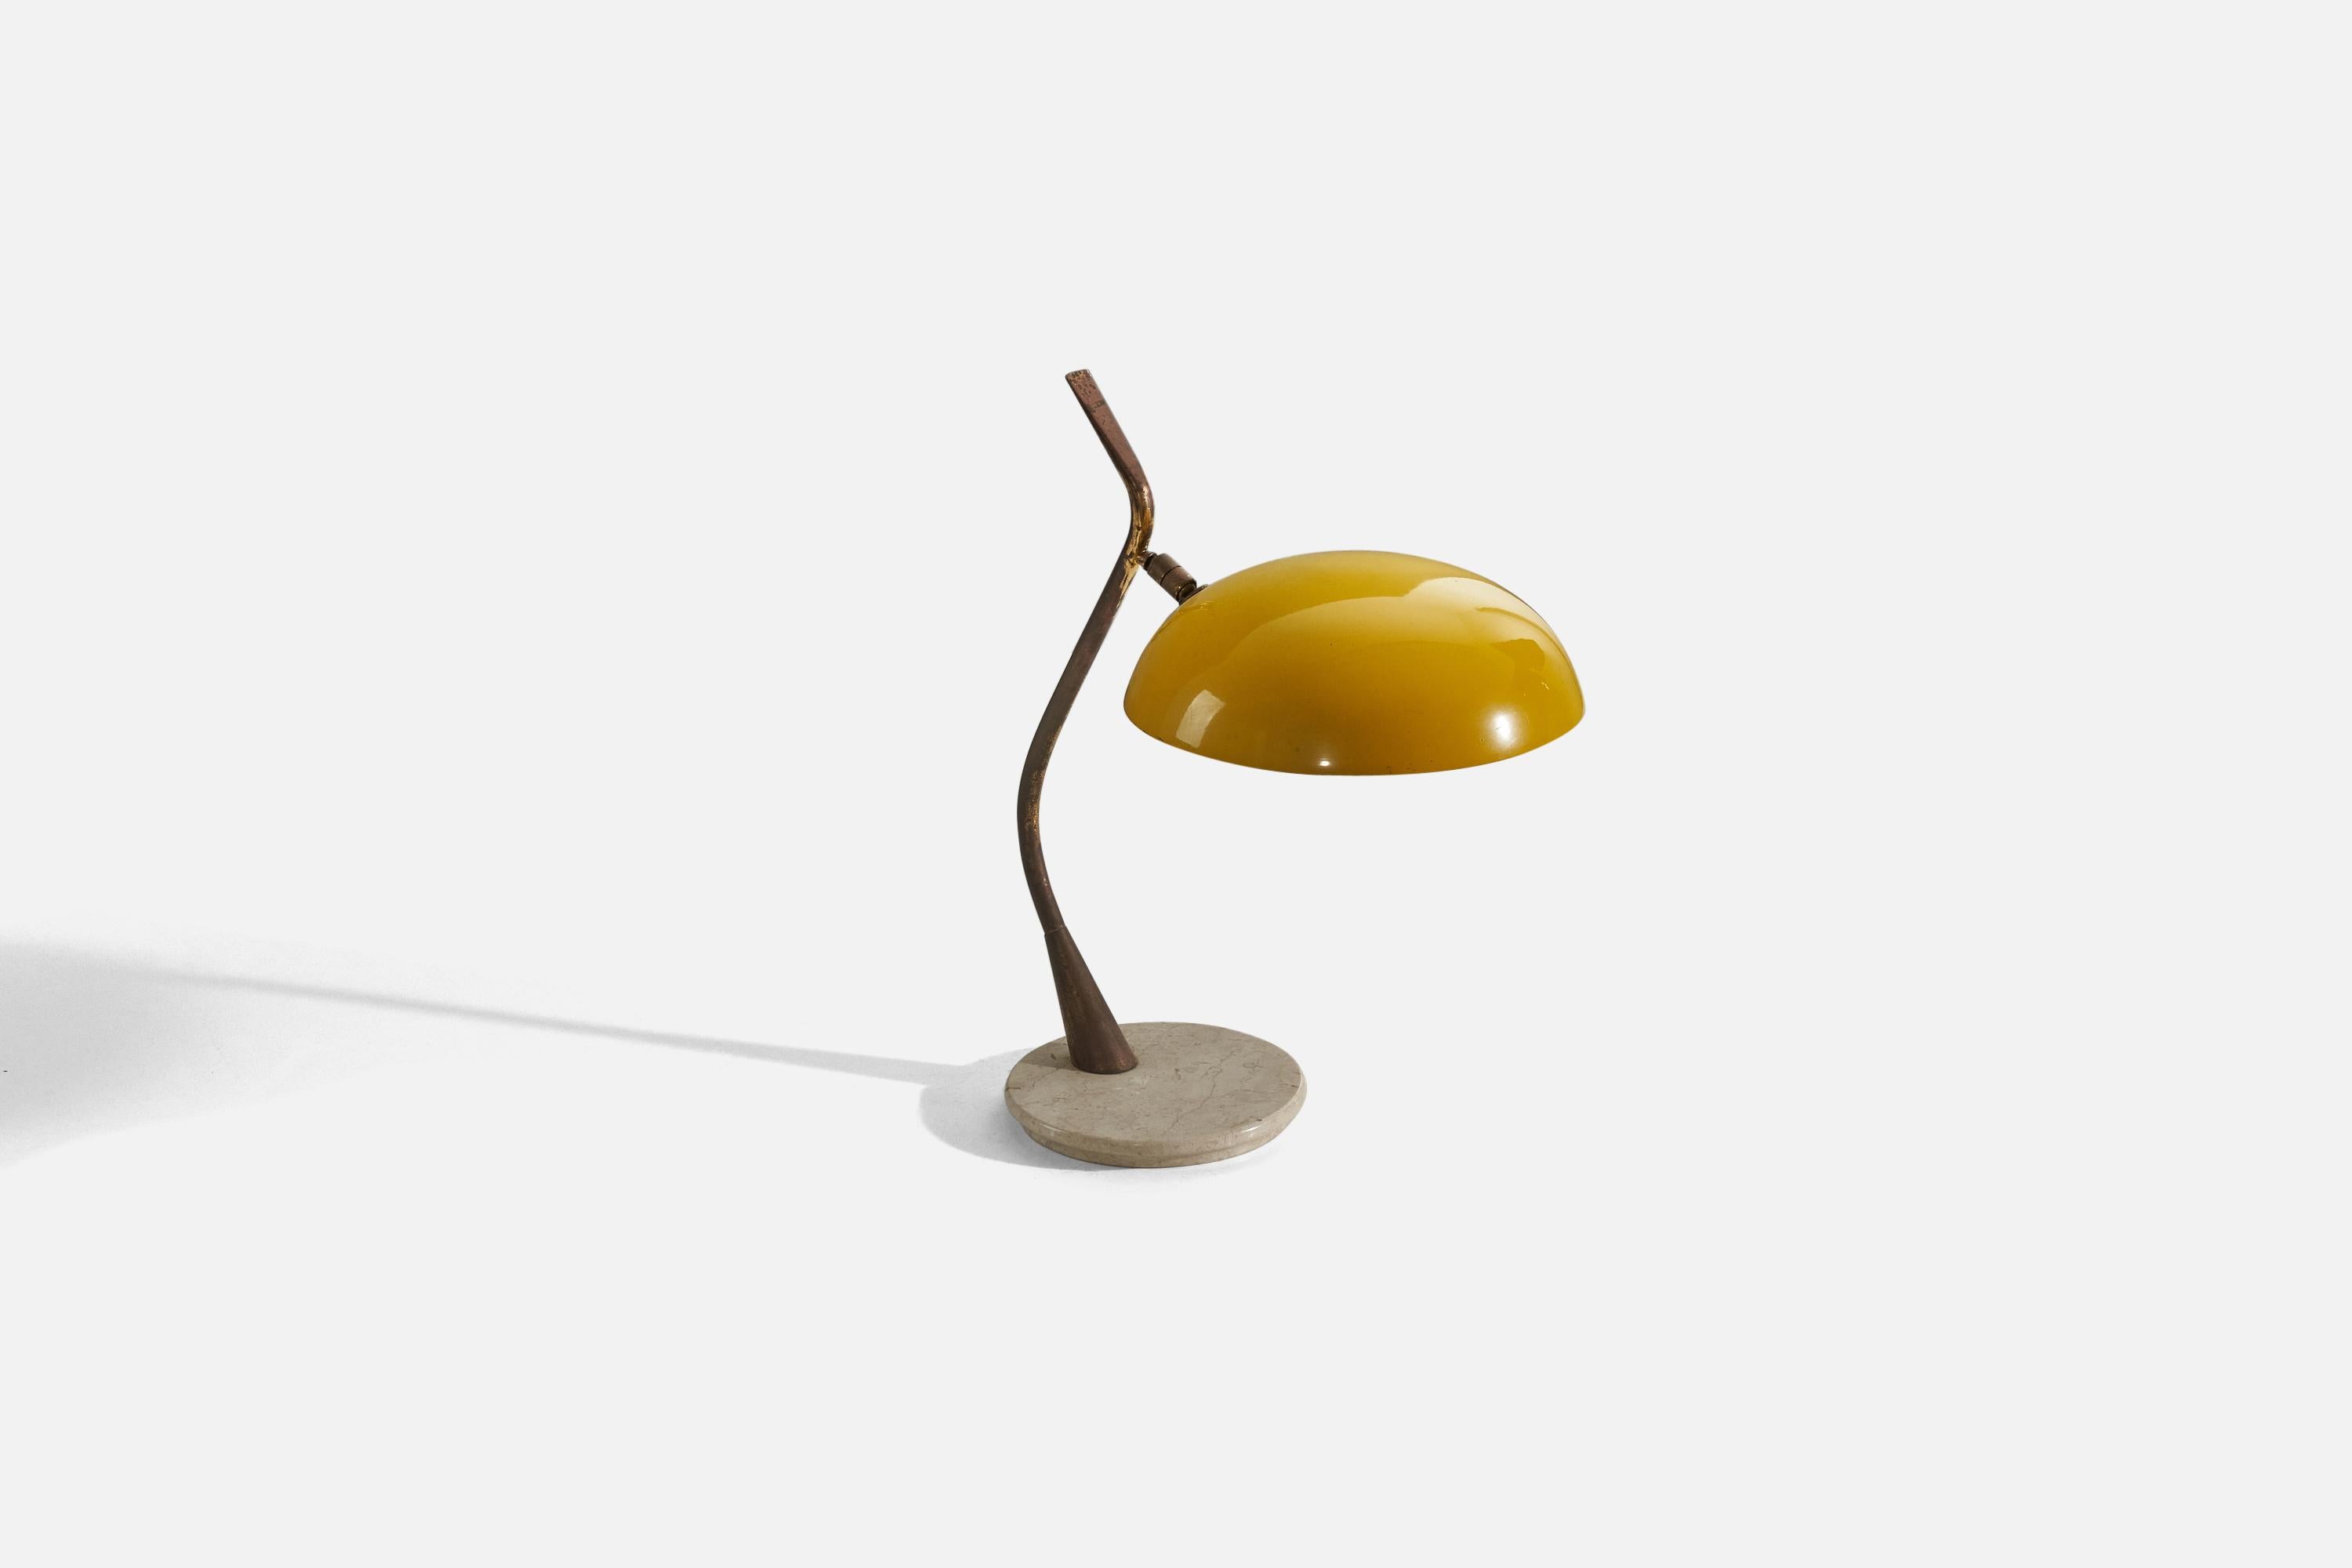 Lampe de table en laiton, métal et marbre, conçue et produite par un designer italien, Italie, années 1950.

Dimensions variables, mesurées comme illustré dans la première image.